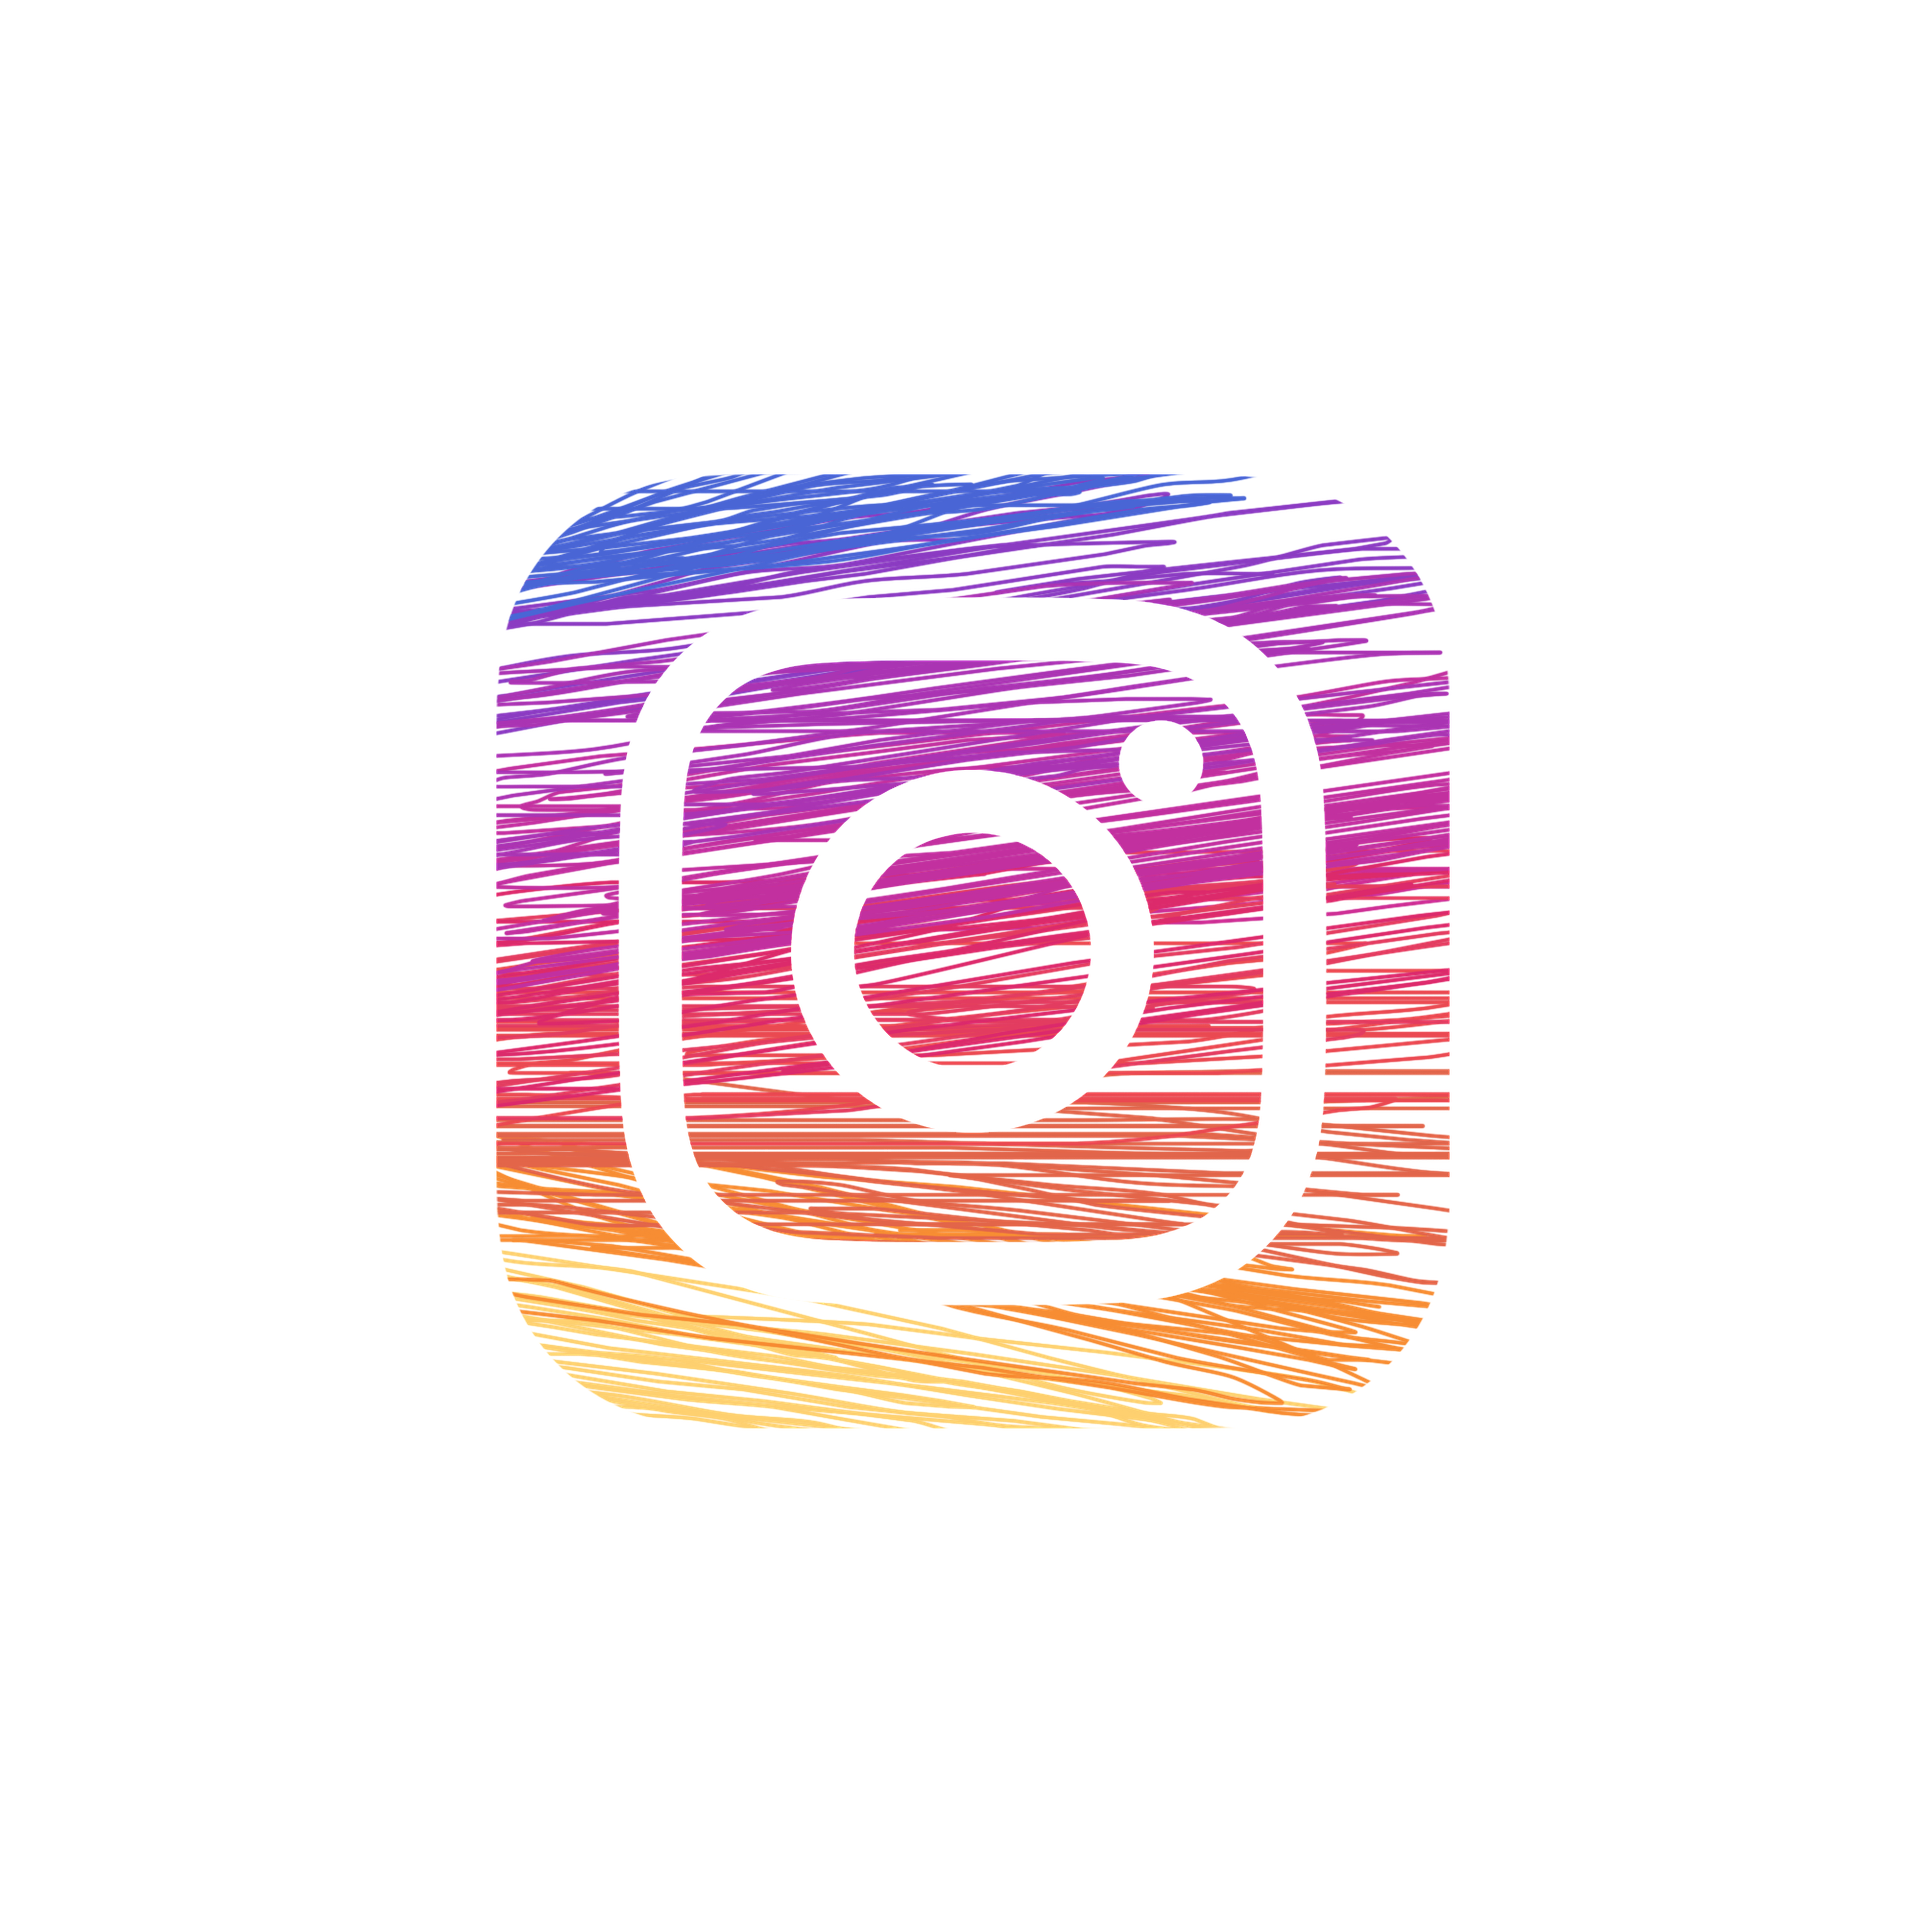 Instagram - Derechos de Autor